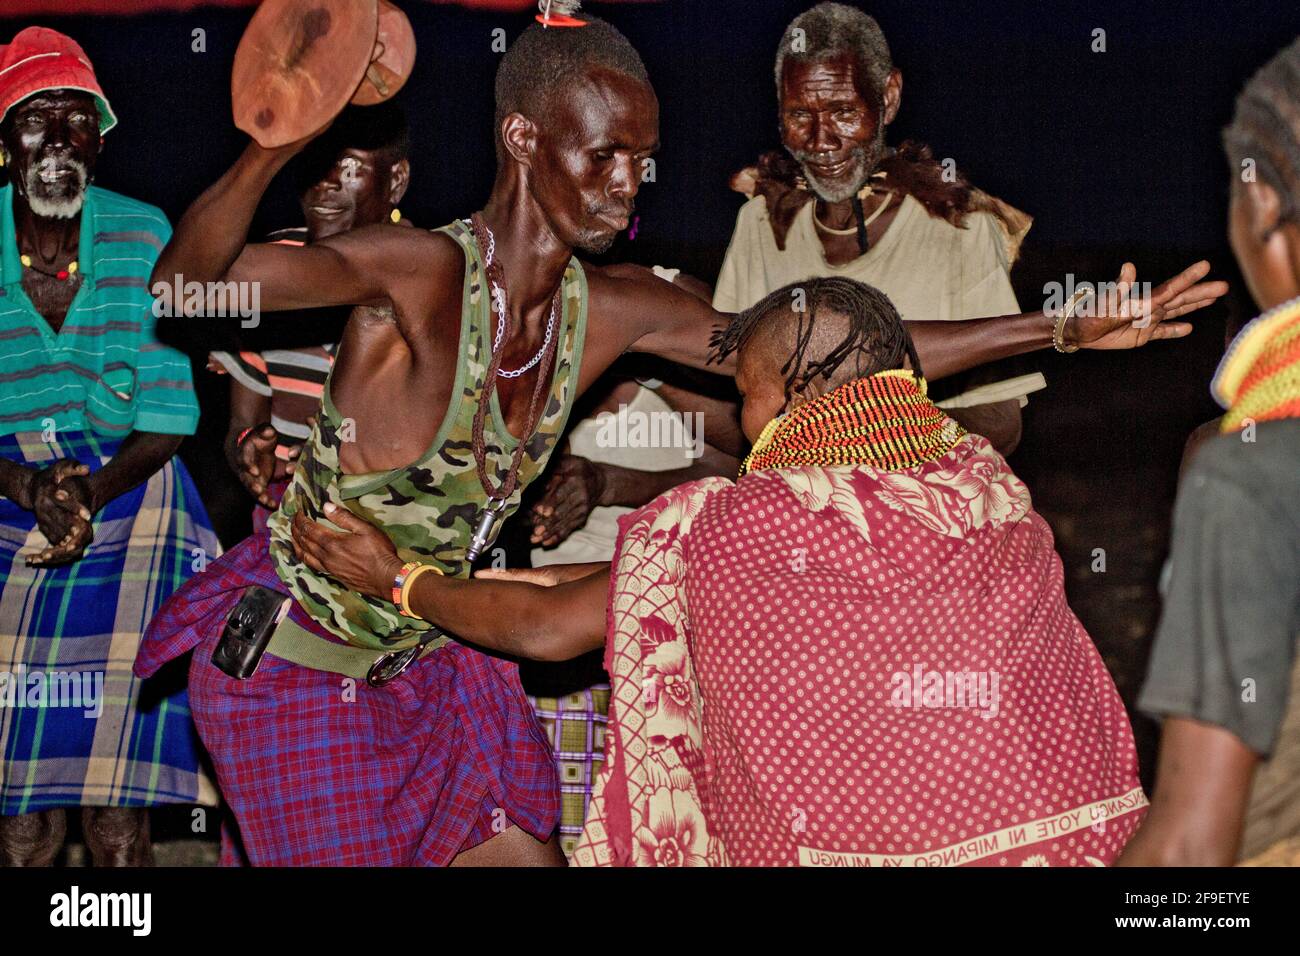 Die Turkana sind ein nilotisches Volk, das im Turkana County im Nordwesten Kenias beheimatet ist, einer semiarden Klimaregion, die im Osten an den Lake Turkana, Pokot, grenzt Stockfoto